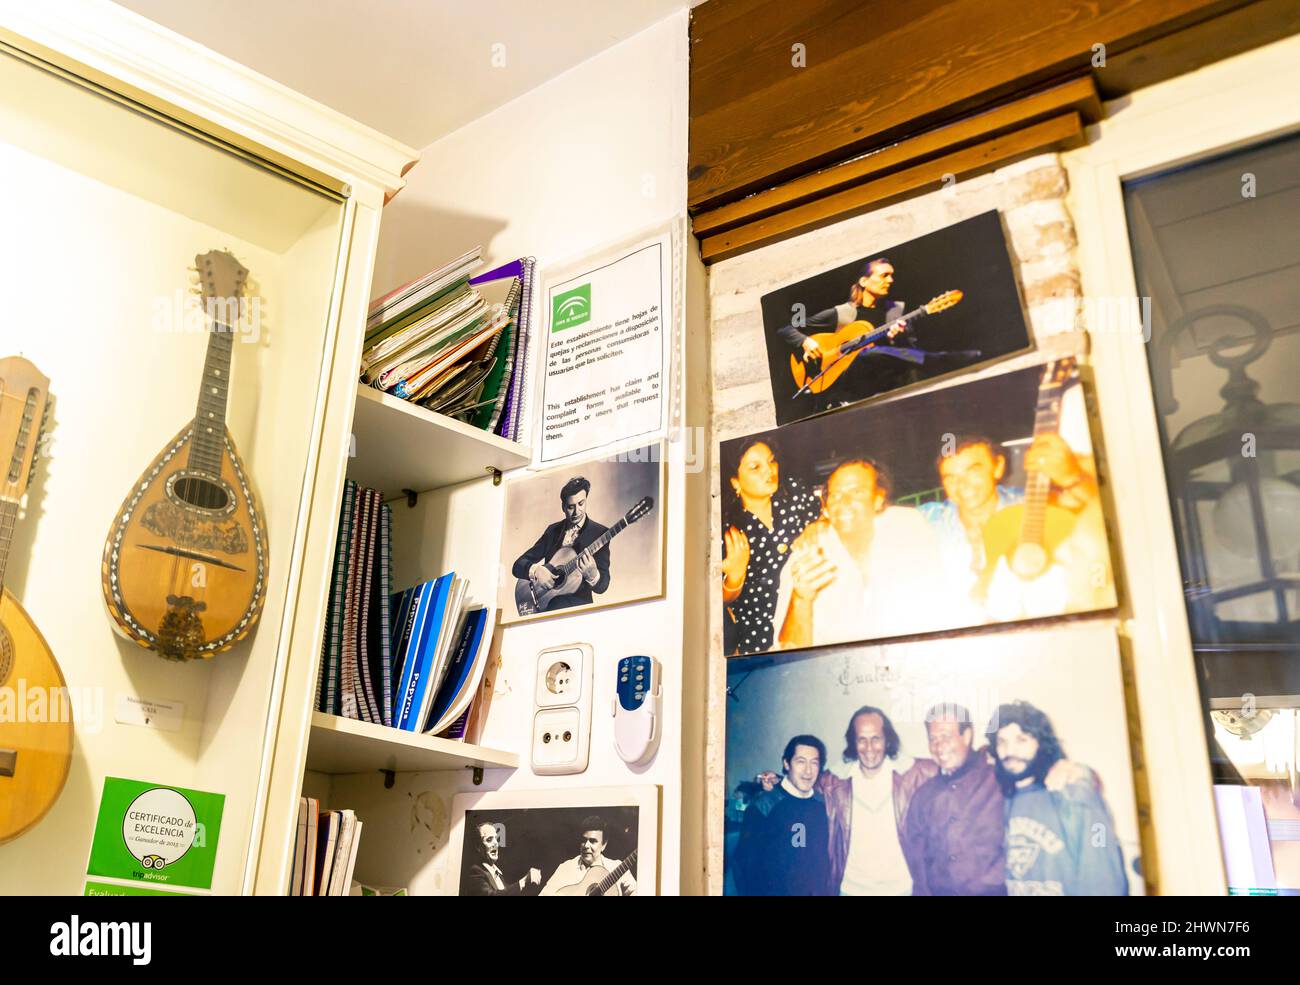 Fotos und Exponaten in Casa de la Guitarra Flamenco-Platz und Museum, Calle Meson del Moro, Sevilla, Spanien Stockfoto